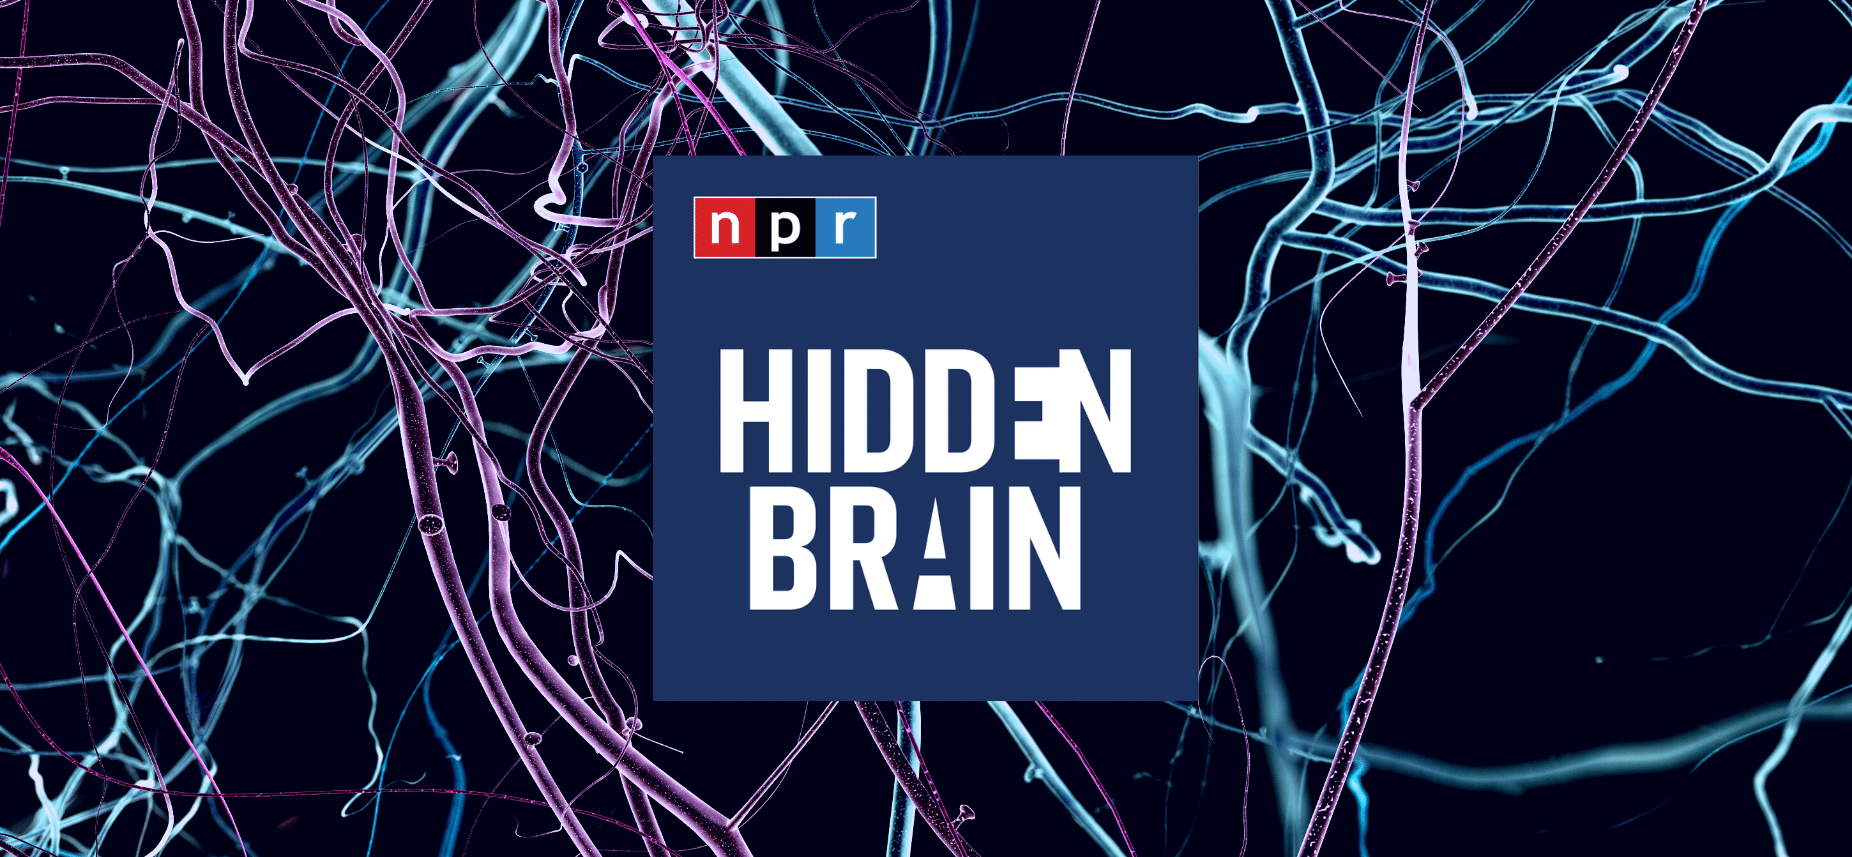 npr hidden brain episodes